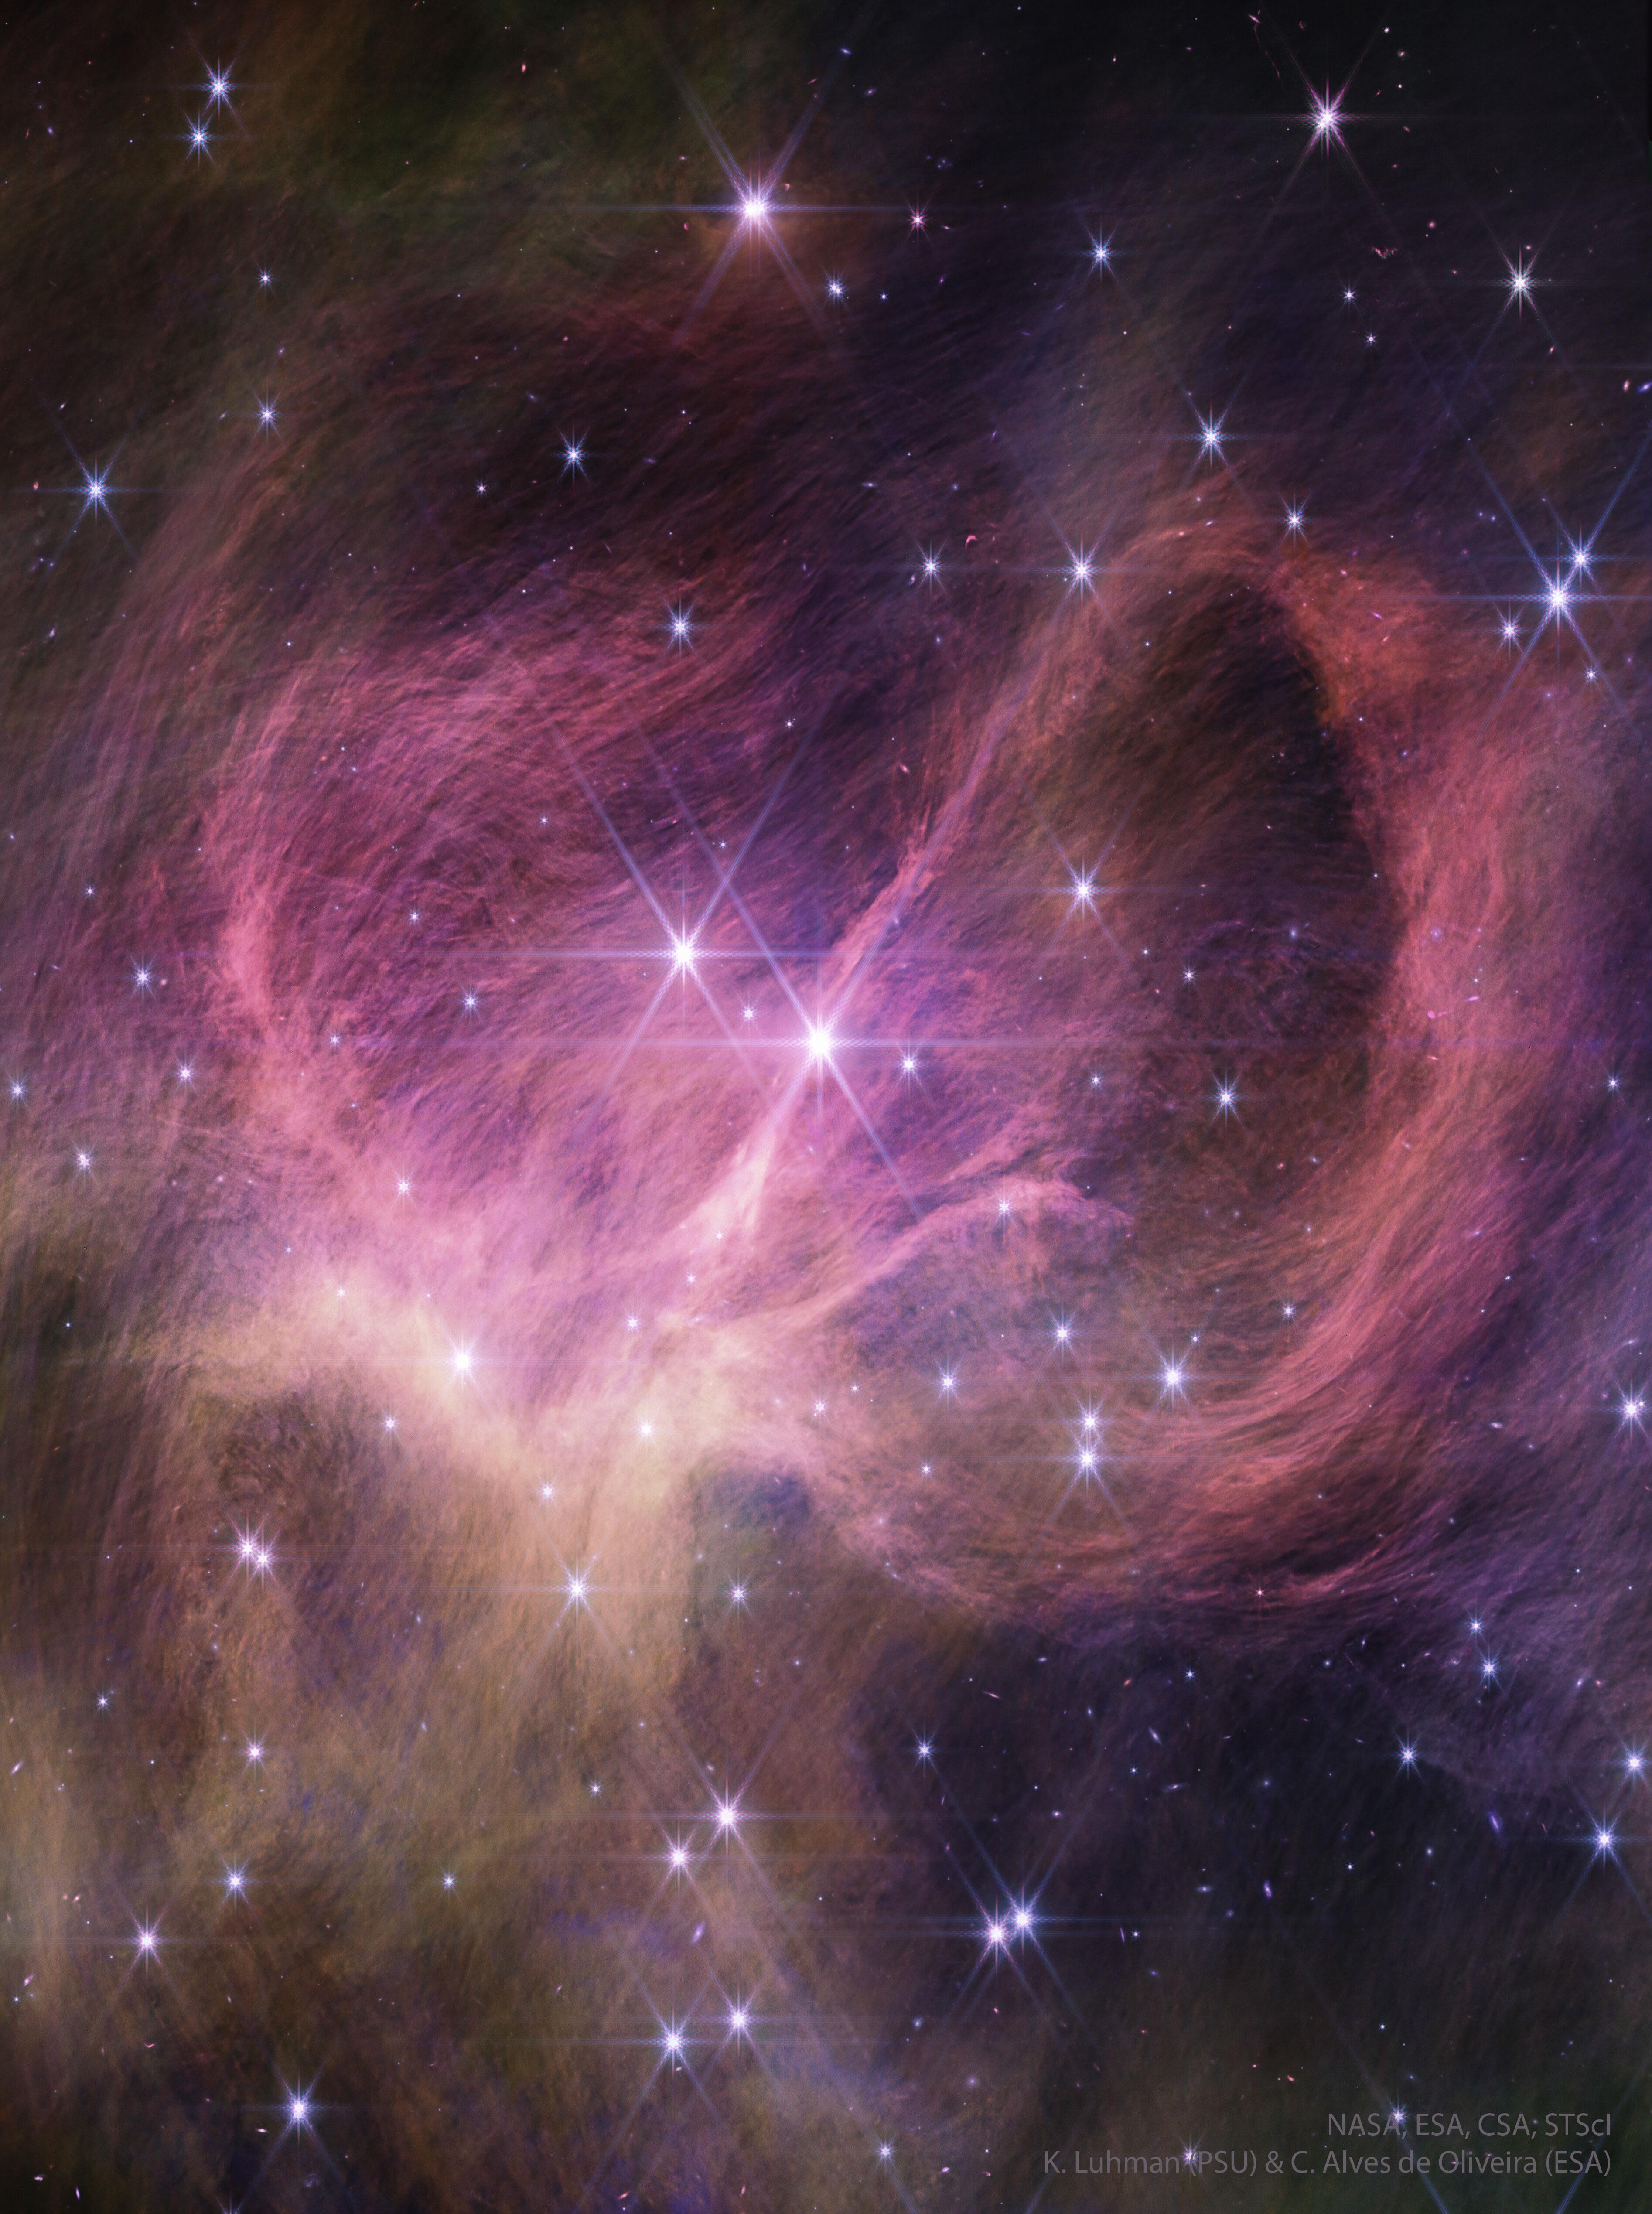 عنقودٌ من النجوم بجانب غبار وغازٍ سديميٍّ مُحيط. إنّ رياح الغُبار -التي تُعرض بالضوء تحت الأحمر بلونٍ زهريّ- حول المركز السديميّ ونفسها تبدو مكوّنةً من العديد من الخيوط الأرفع.